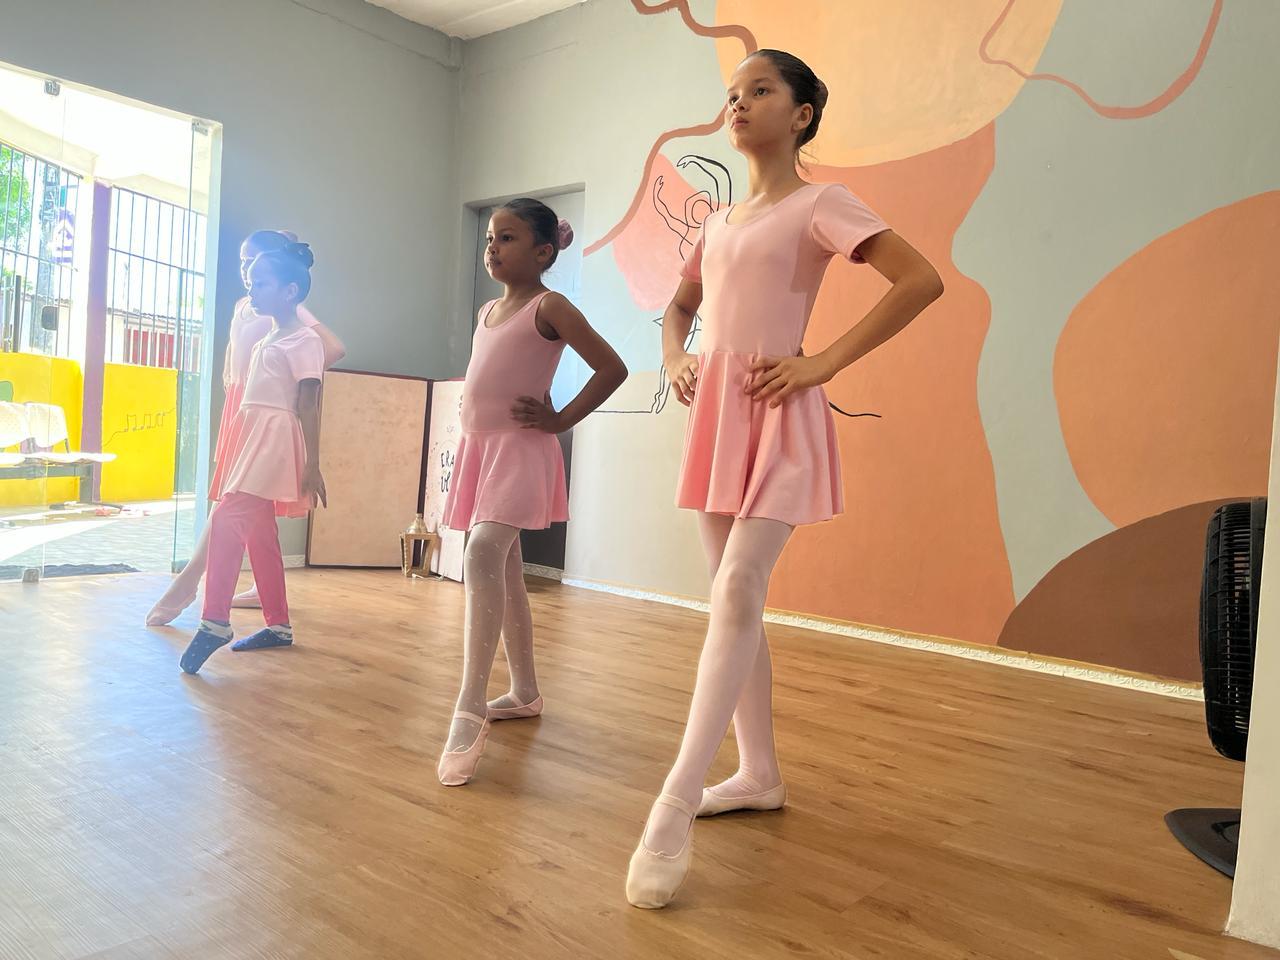 Casa de artes oferta aula gratuita de balé para crianças em Manaus